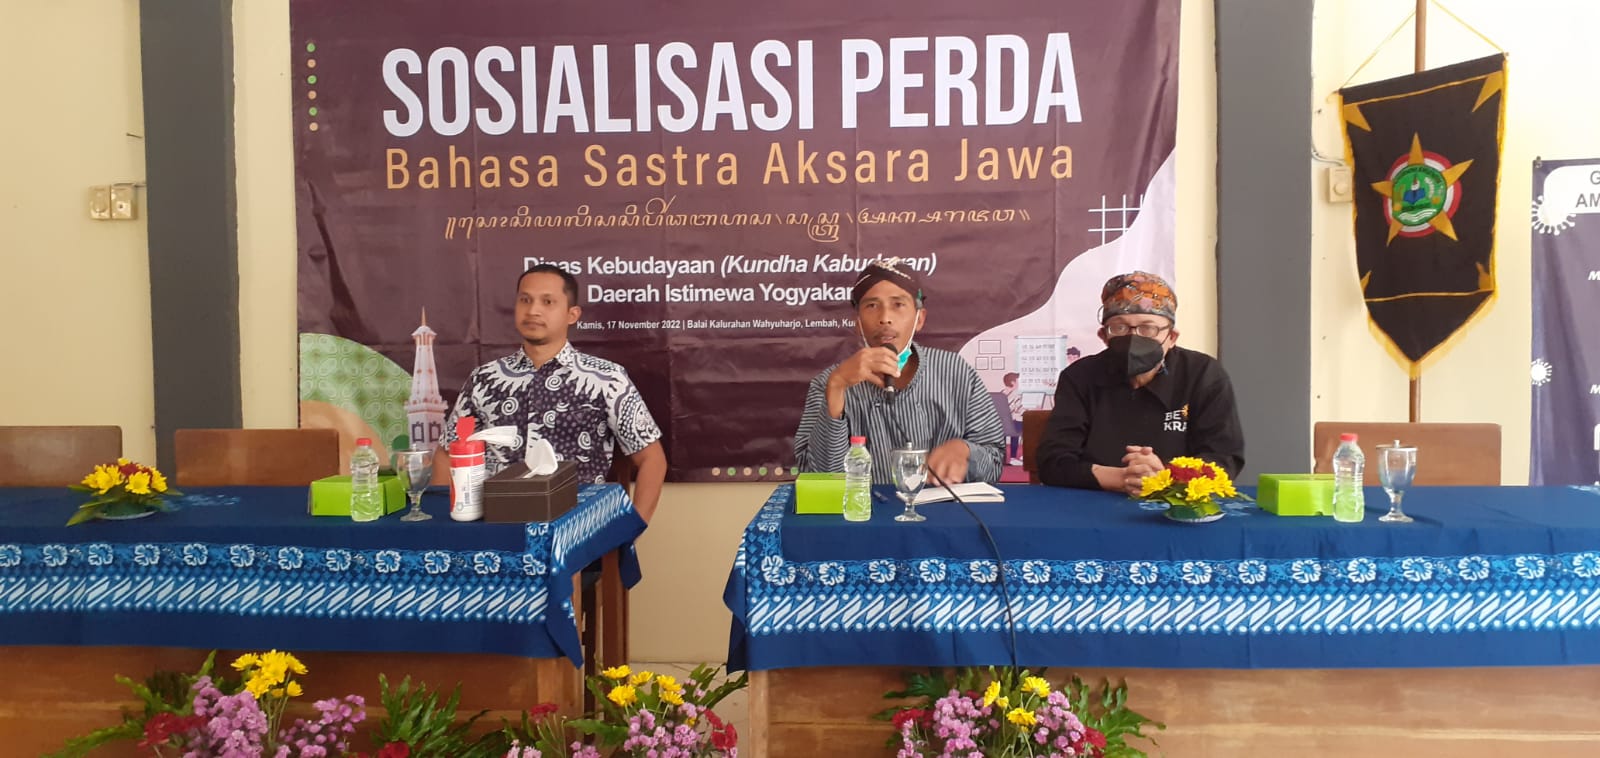 Sosialisasi Perda Bahasa Sastra Aksara Jawa bersama Putra bungsu Amien Rais & Praktisi Bahasa 